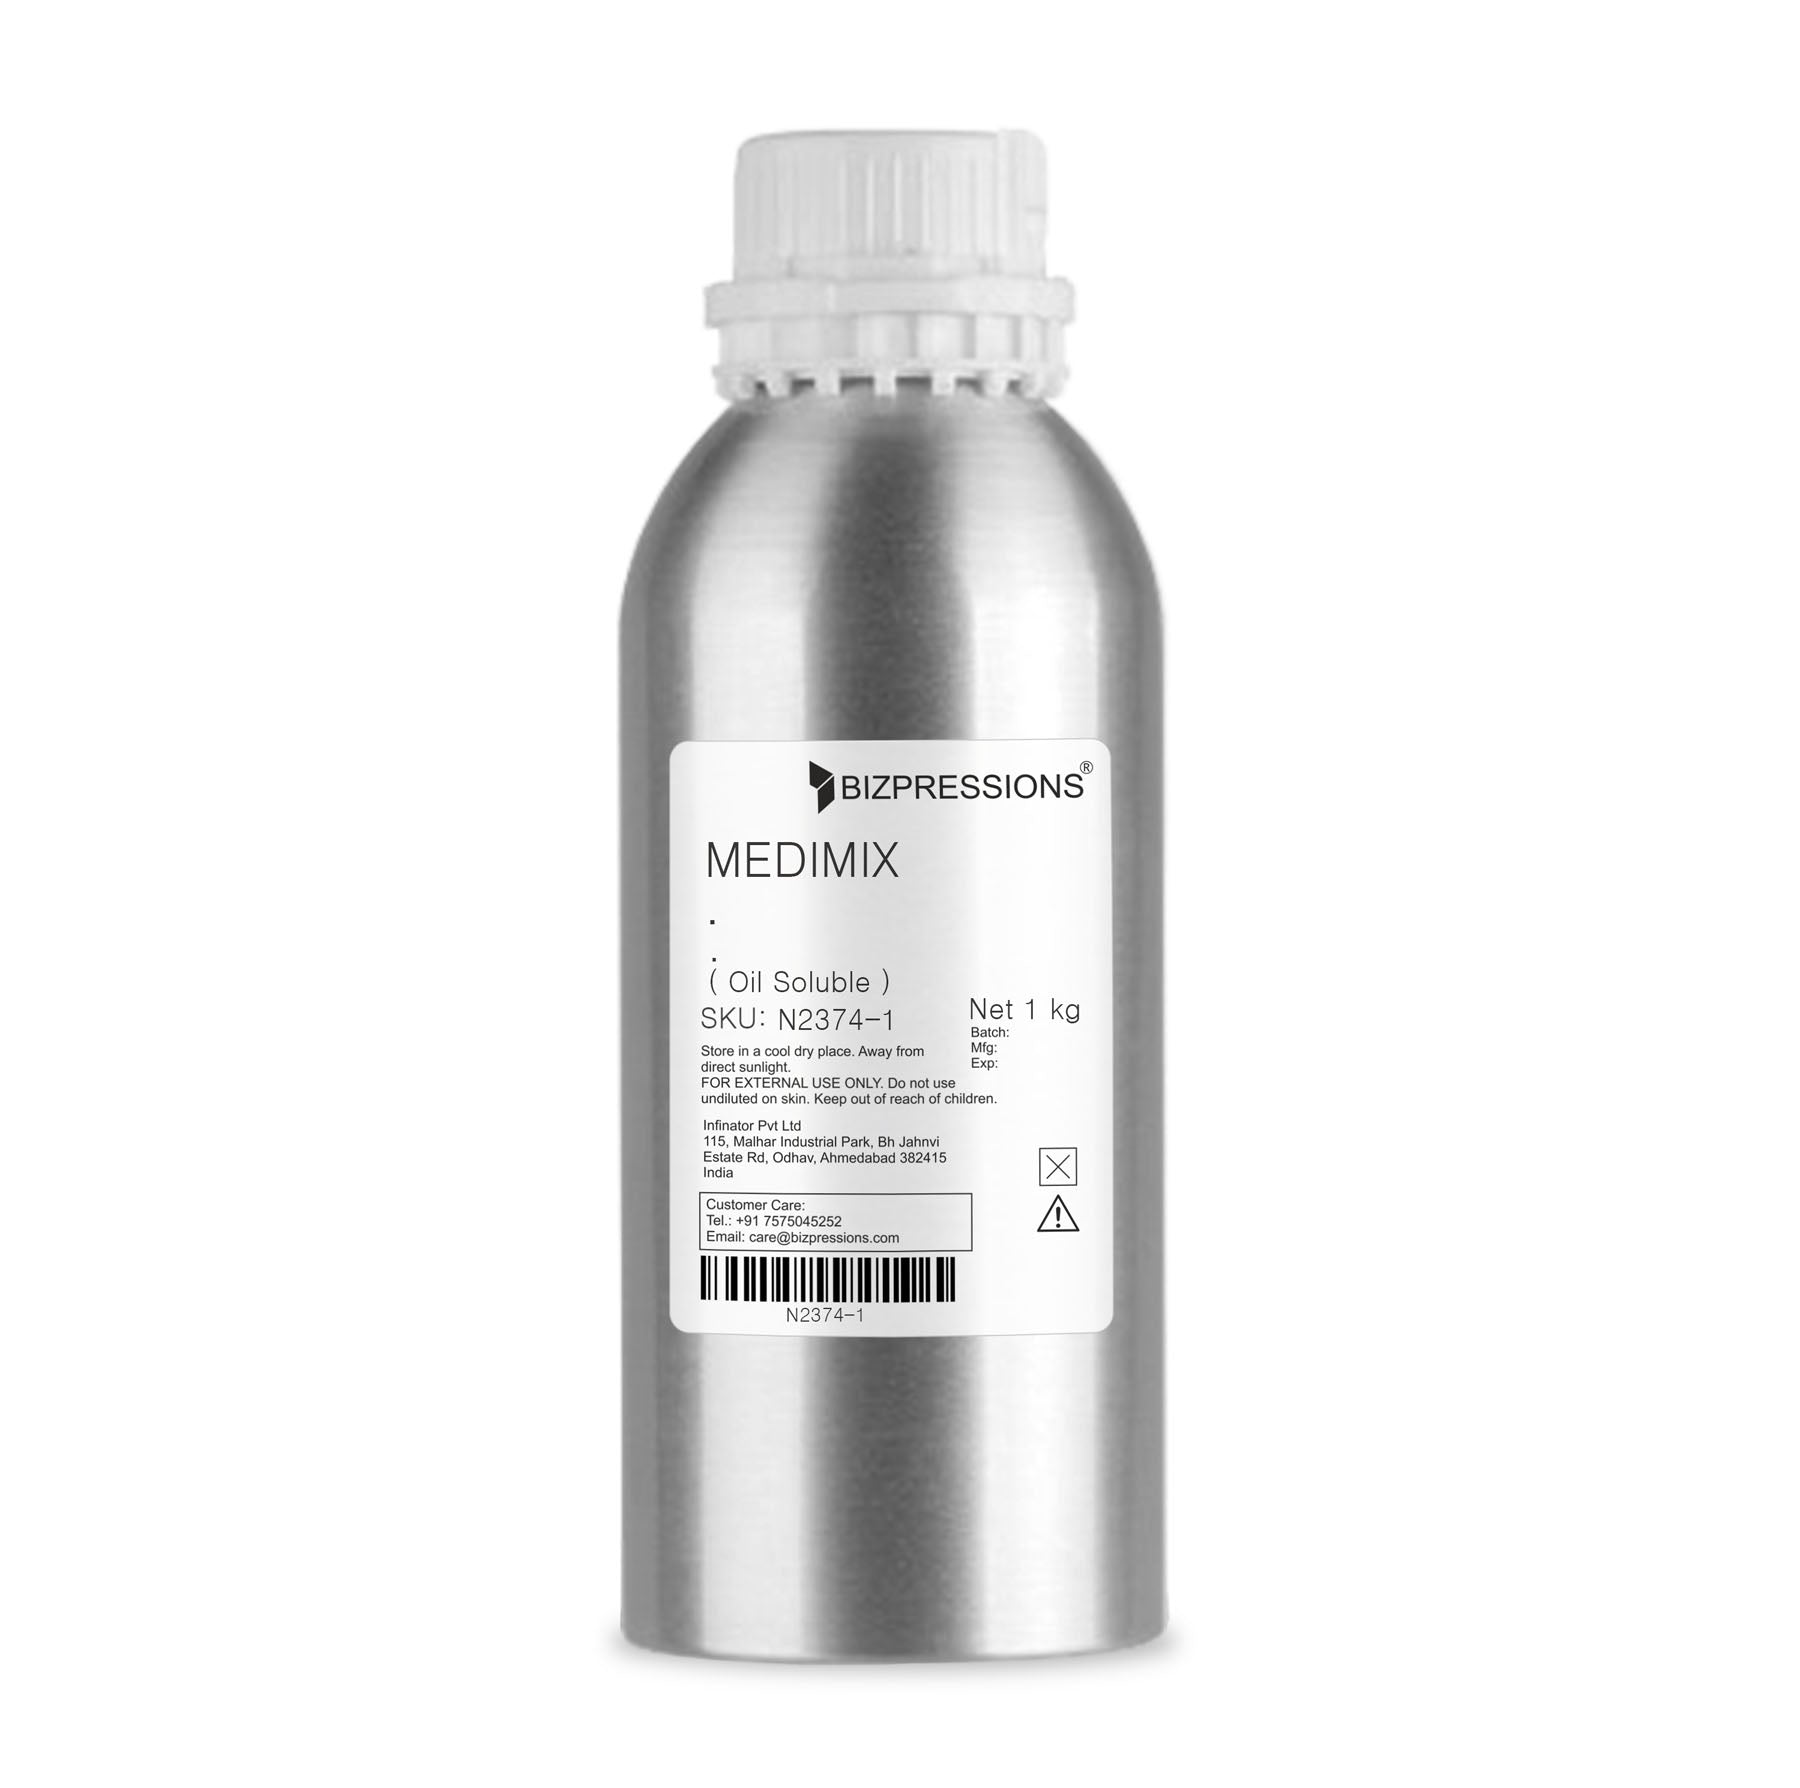 MEDIMIX - Fragrance ( Oil Soluble ) - 1 kg